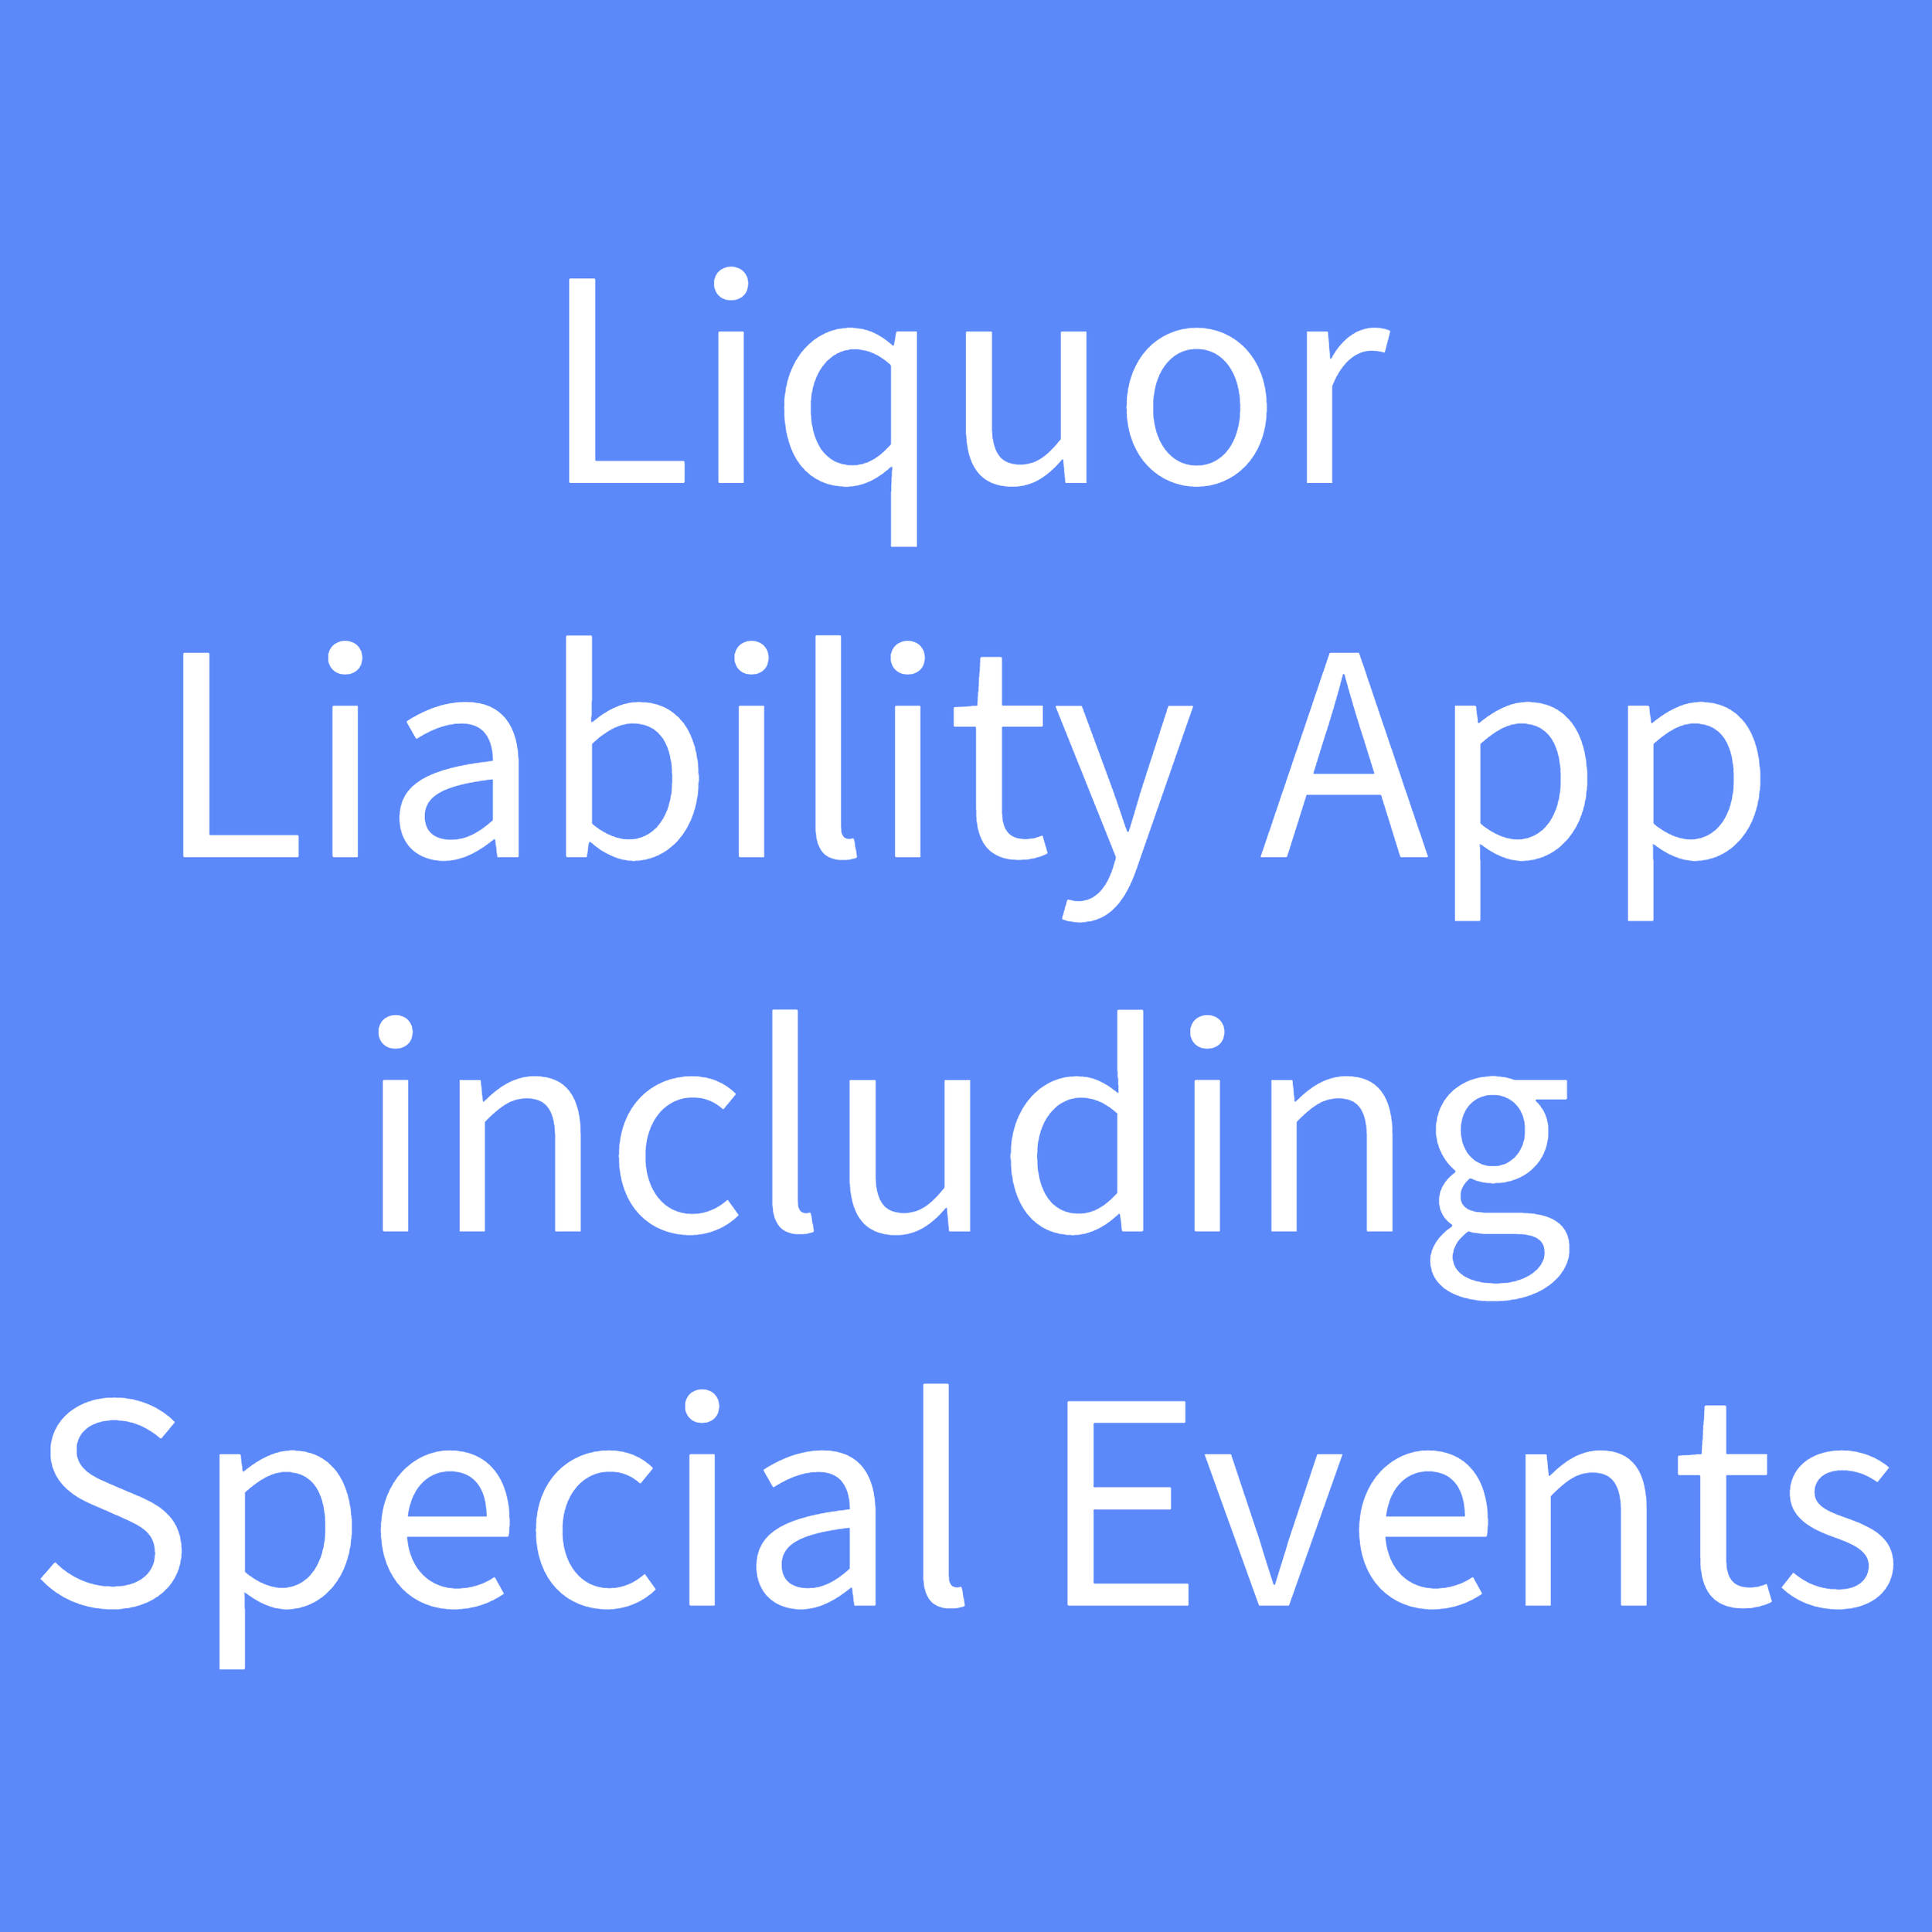 Liquor Liability App Including Special Events